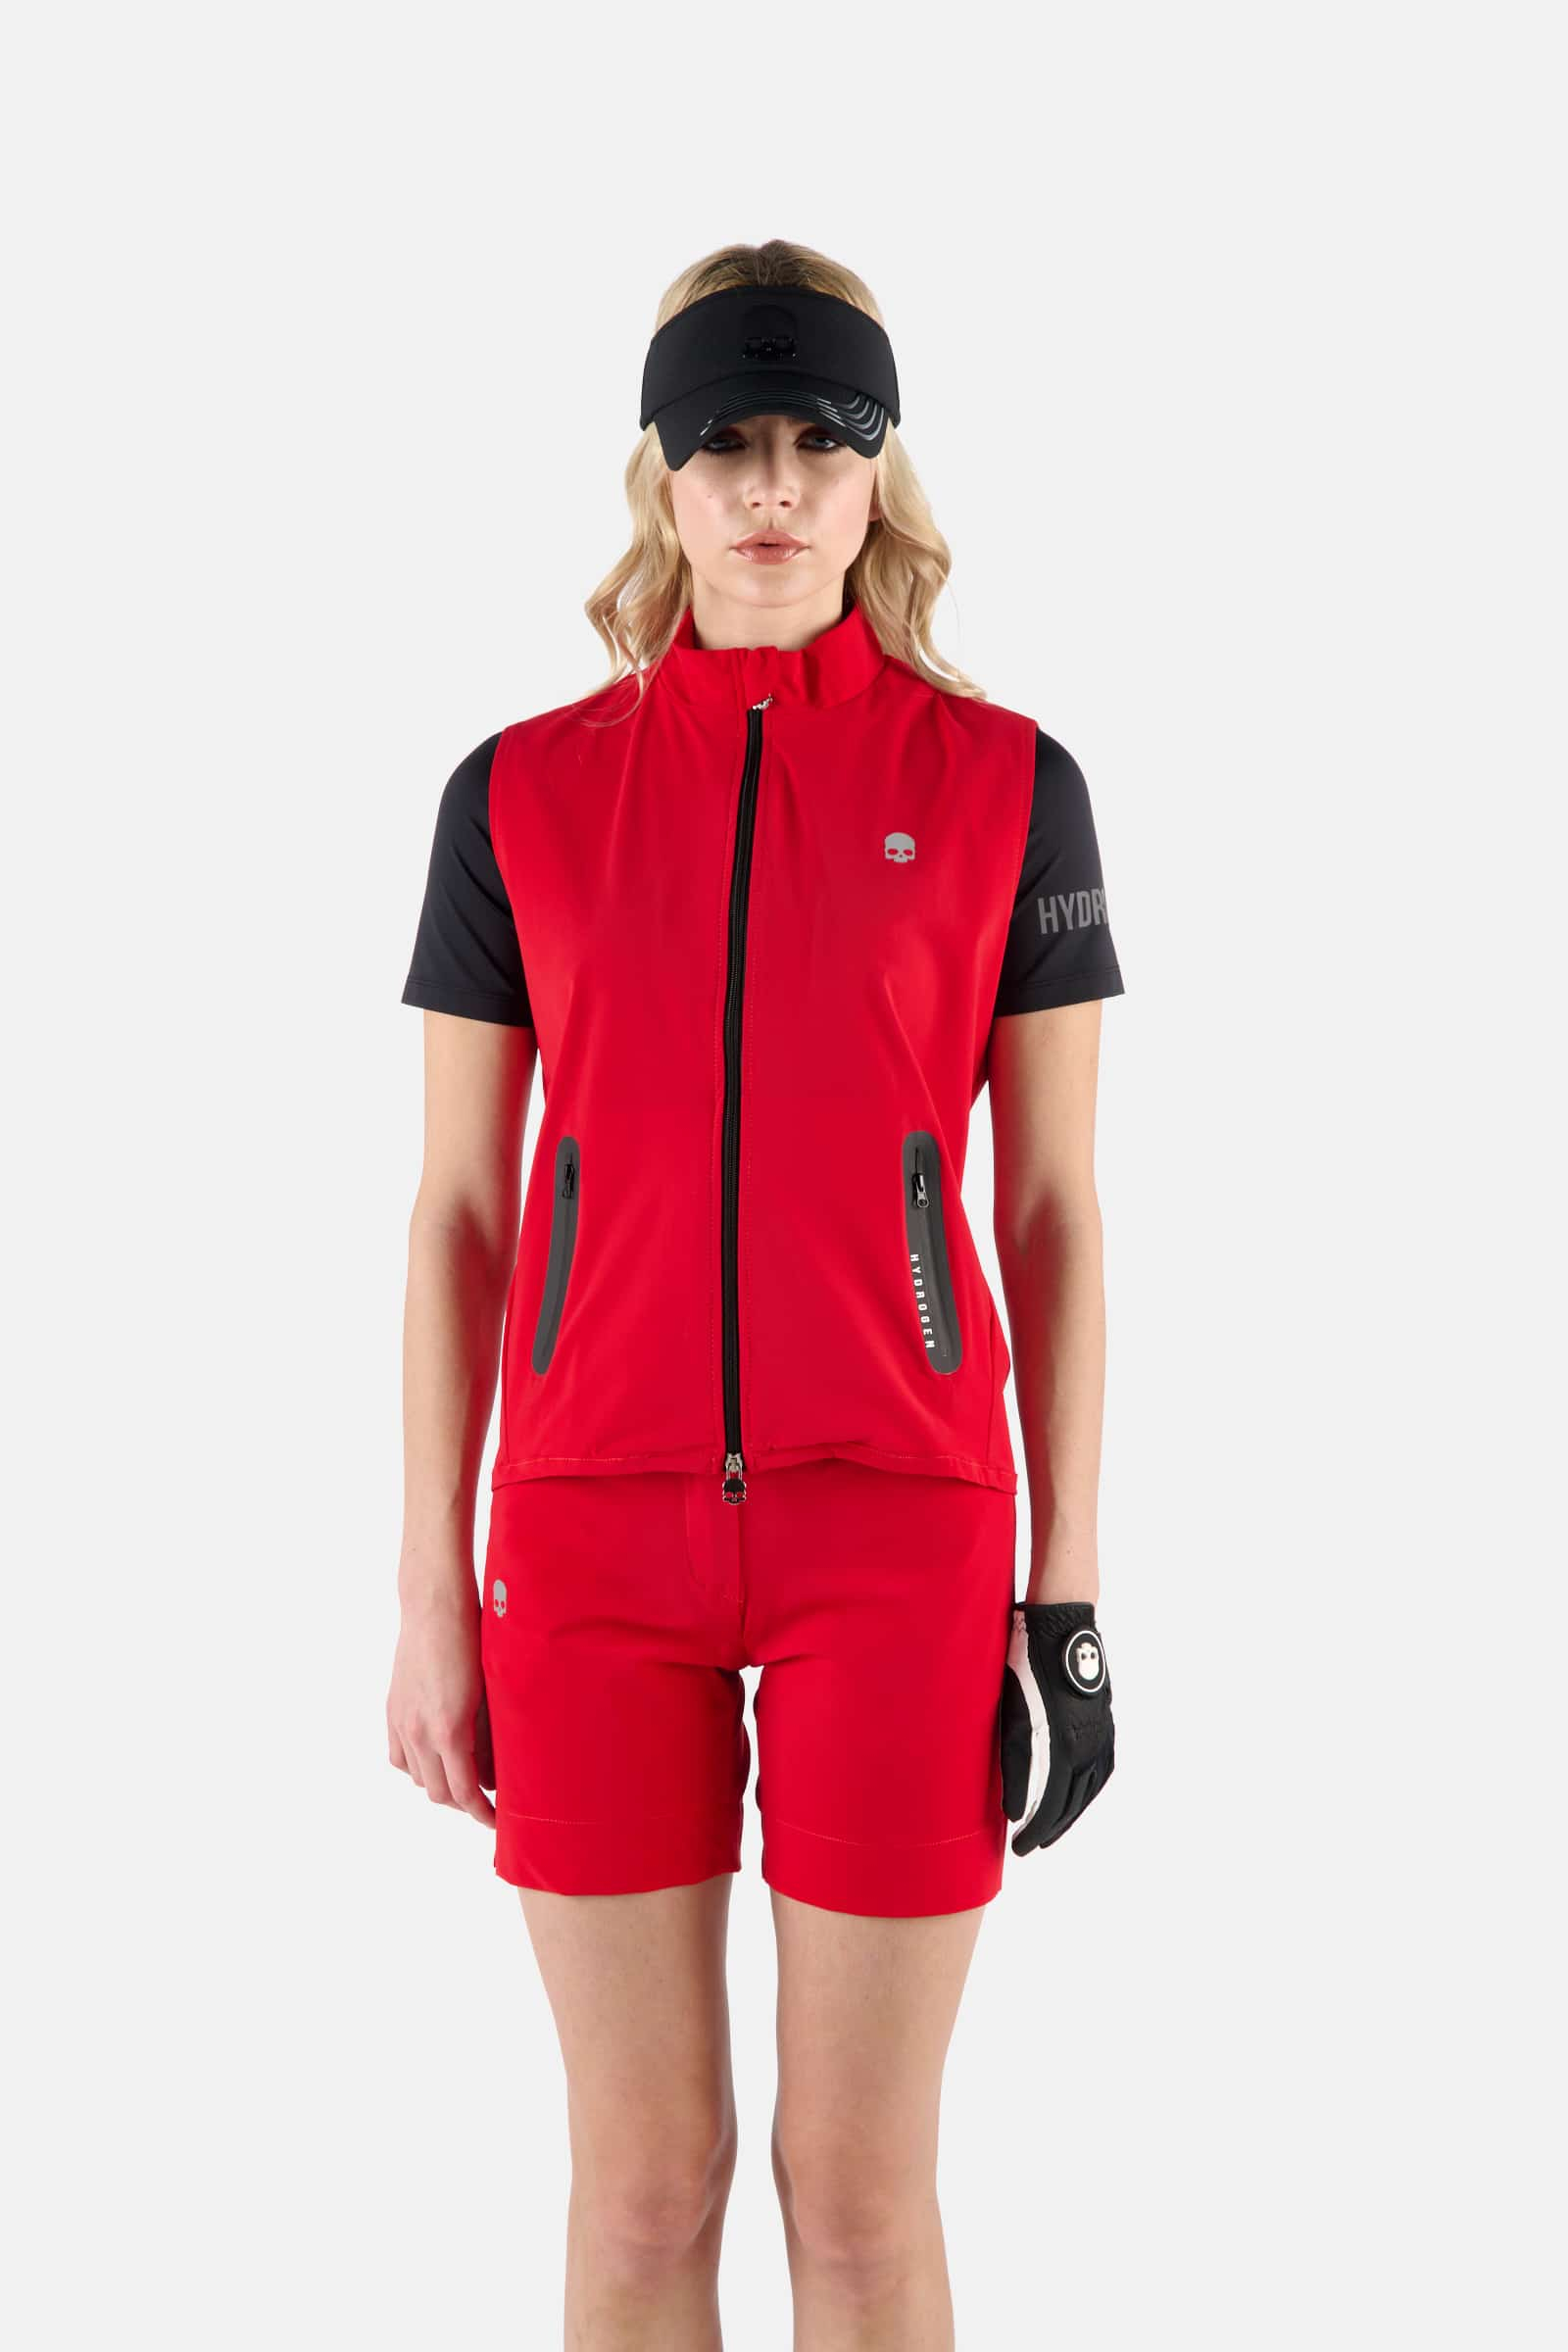 GOLF VEST - Apparel - Hydrogen - Luxury Sportwear